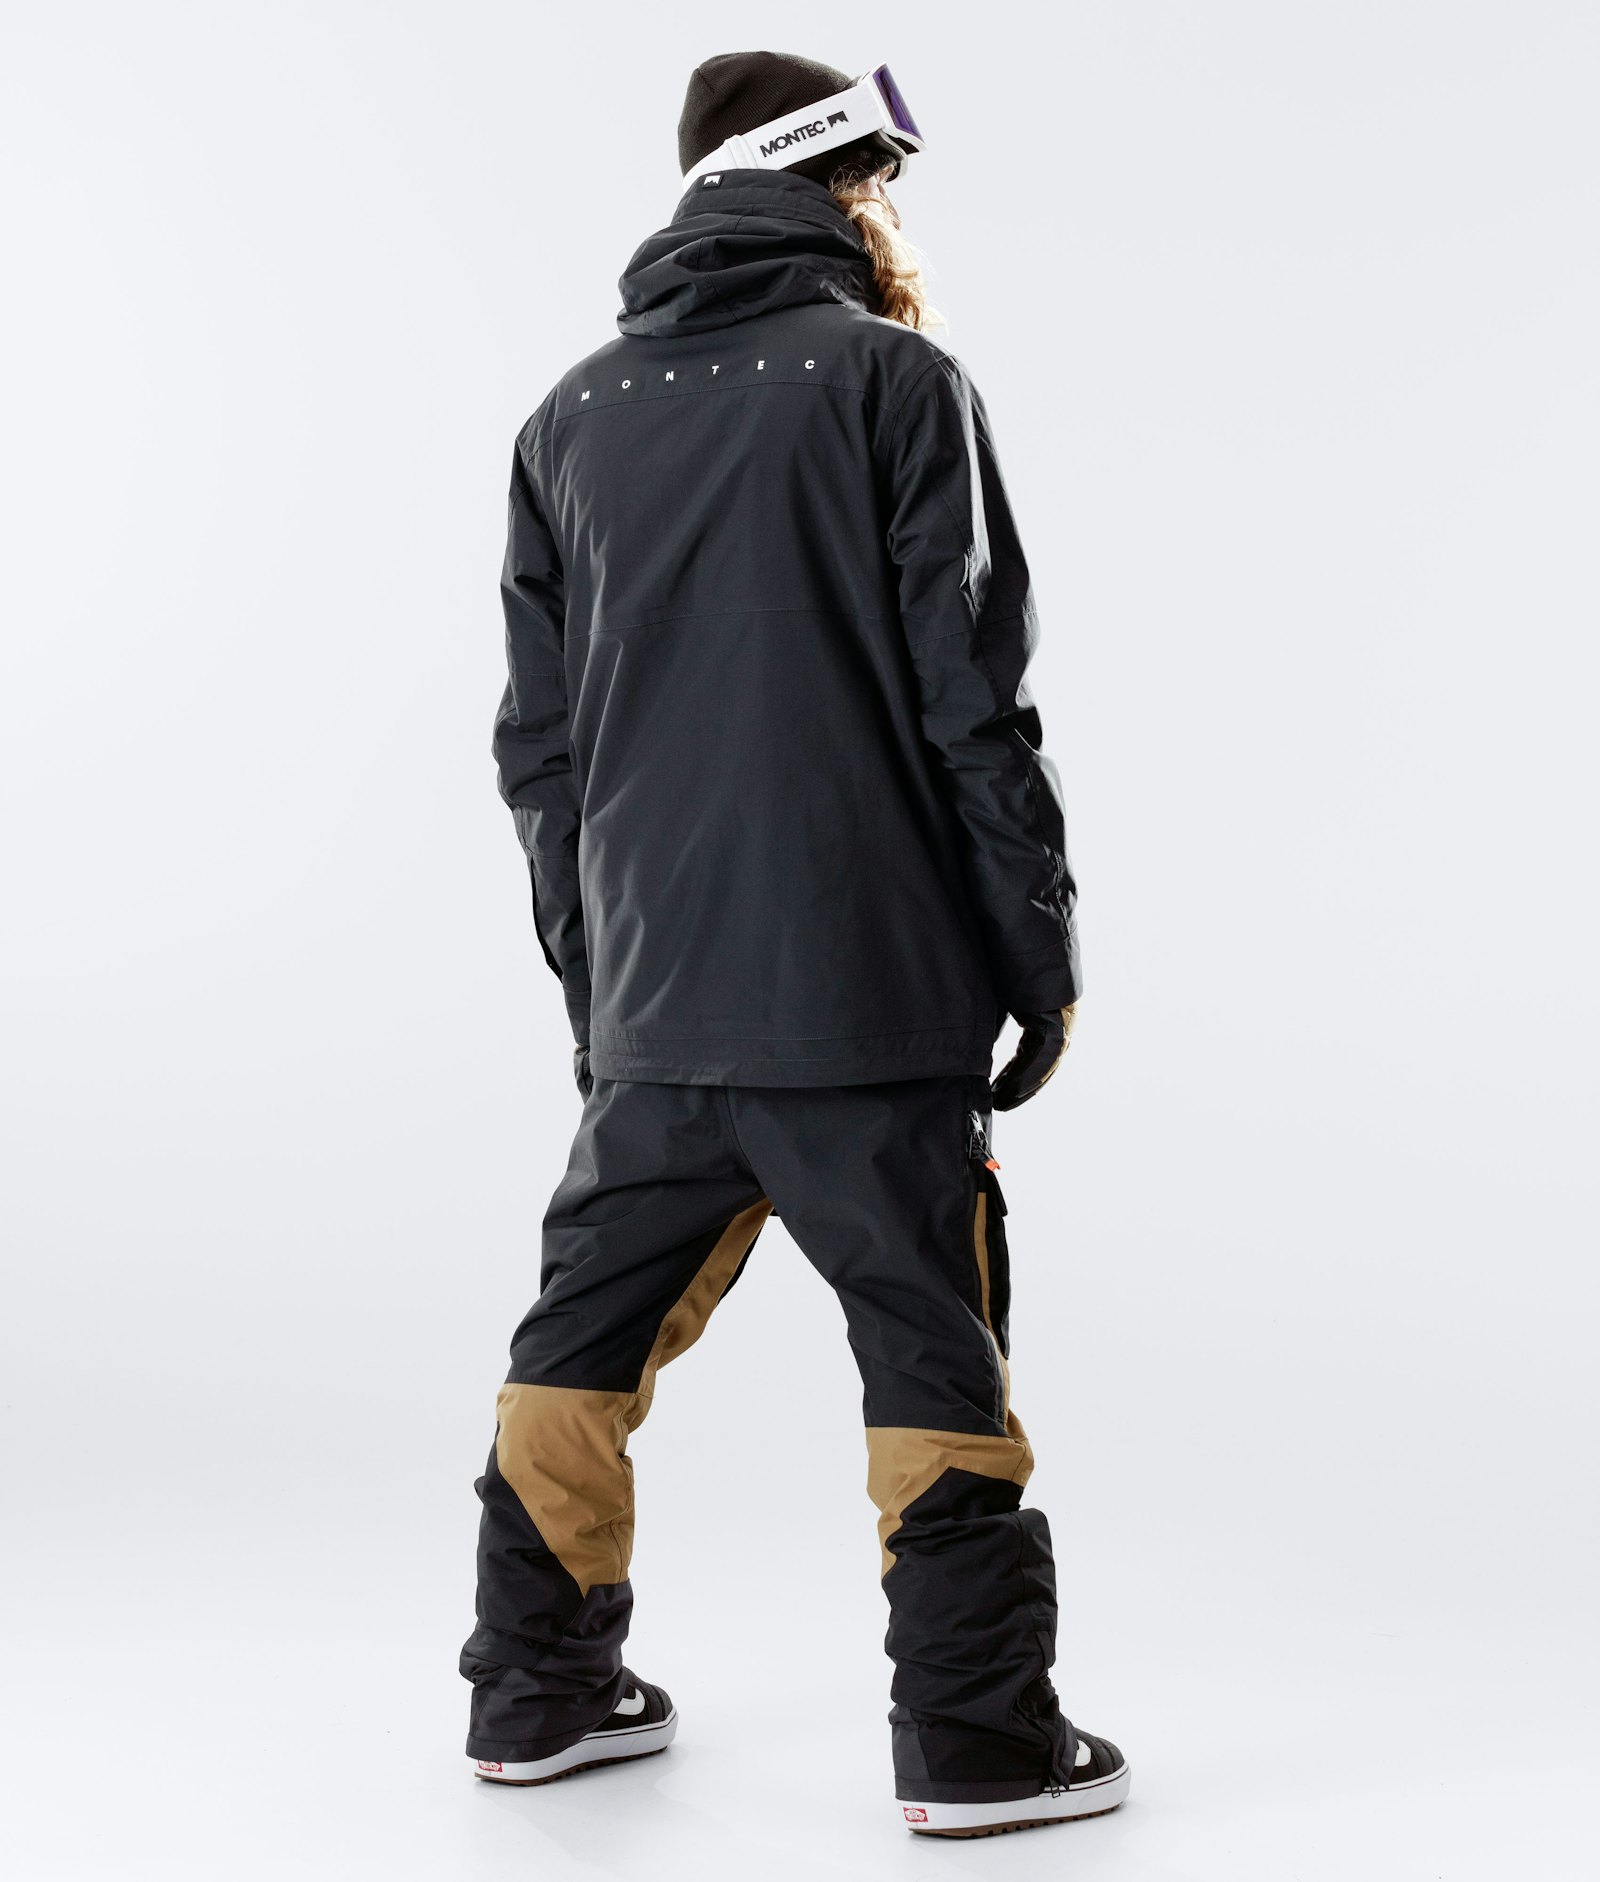 Montec Doom 2020 Snowboard Jacket Men Black